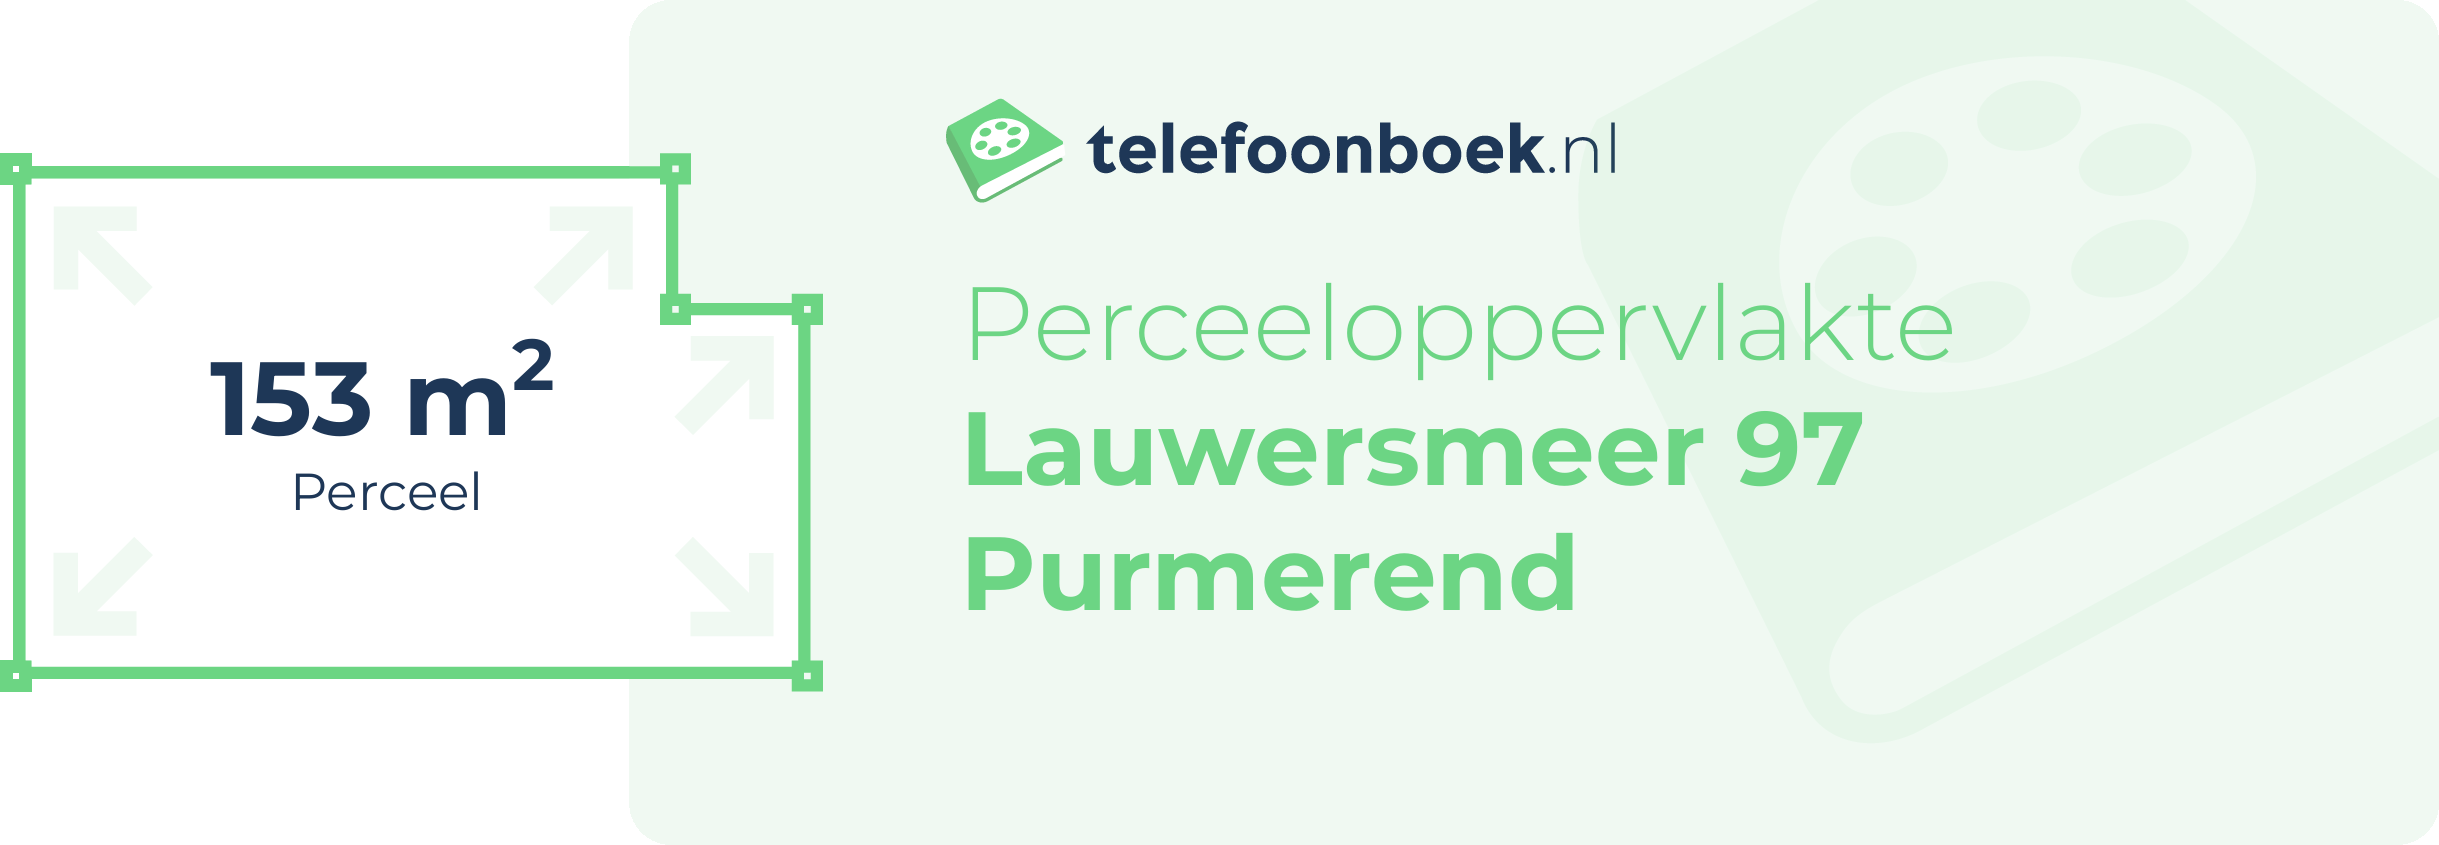 Perceeloppervlakte Lauwersmeer 97 Purmerend